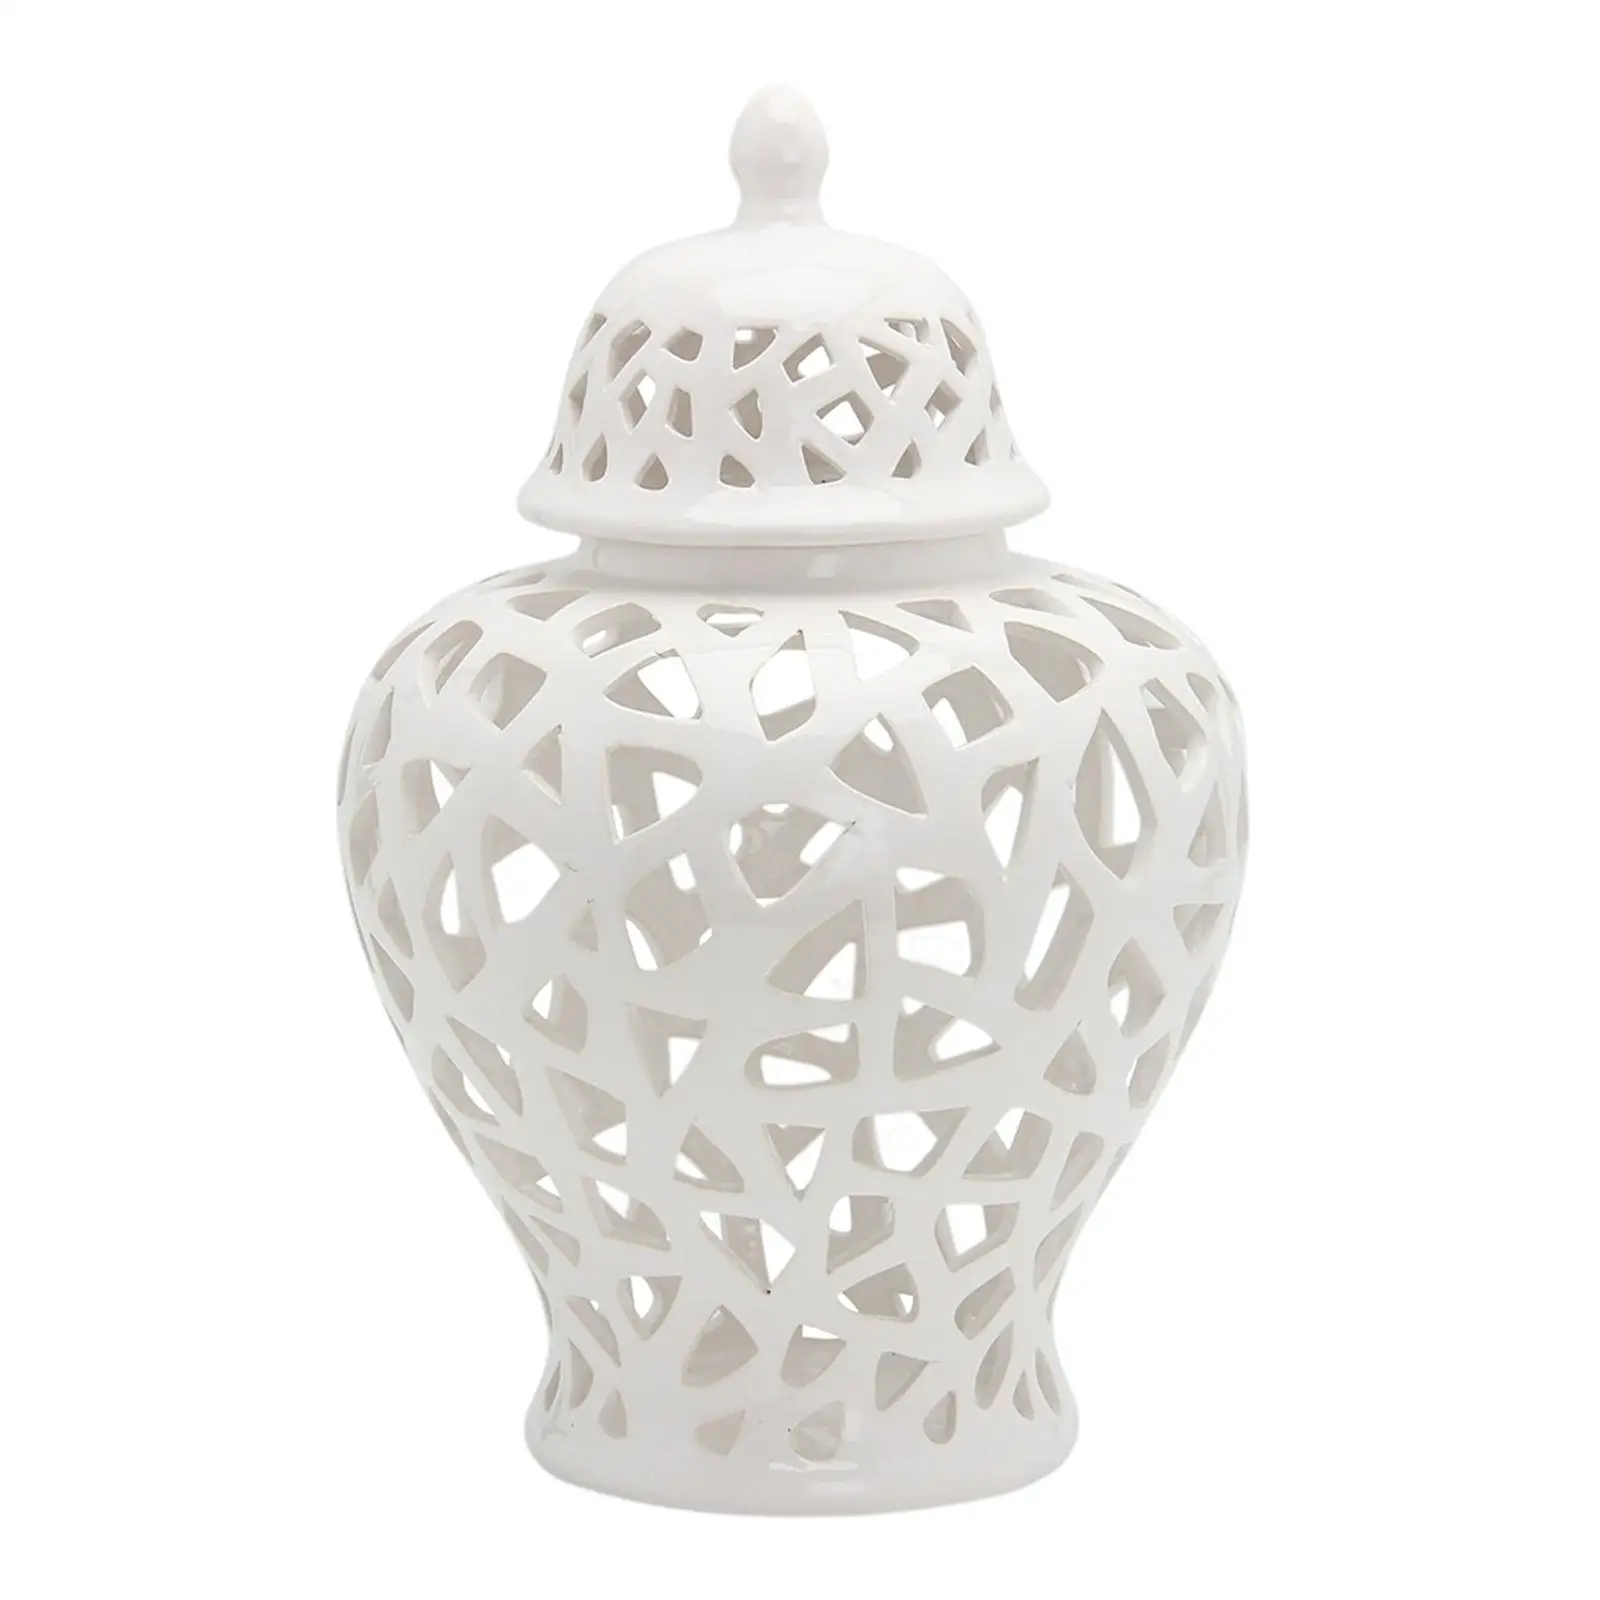 White Ginger Jar Centerpiece Ceramic Vase Decorative Porcelain Jar for Home